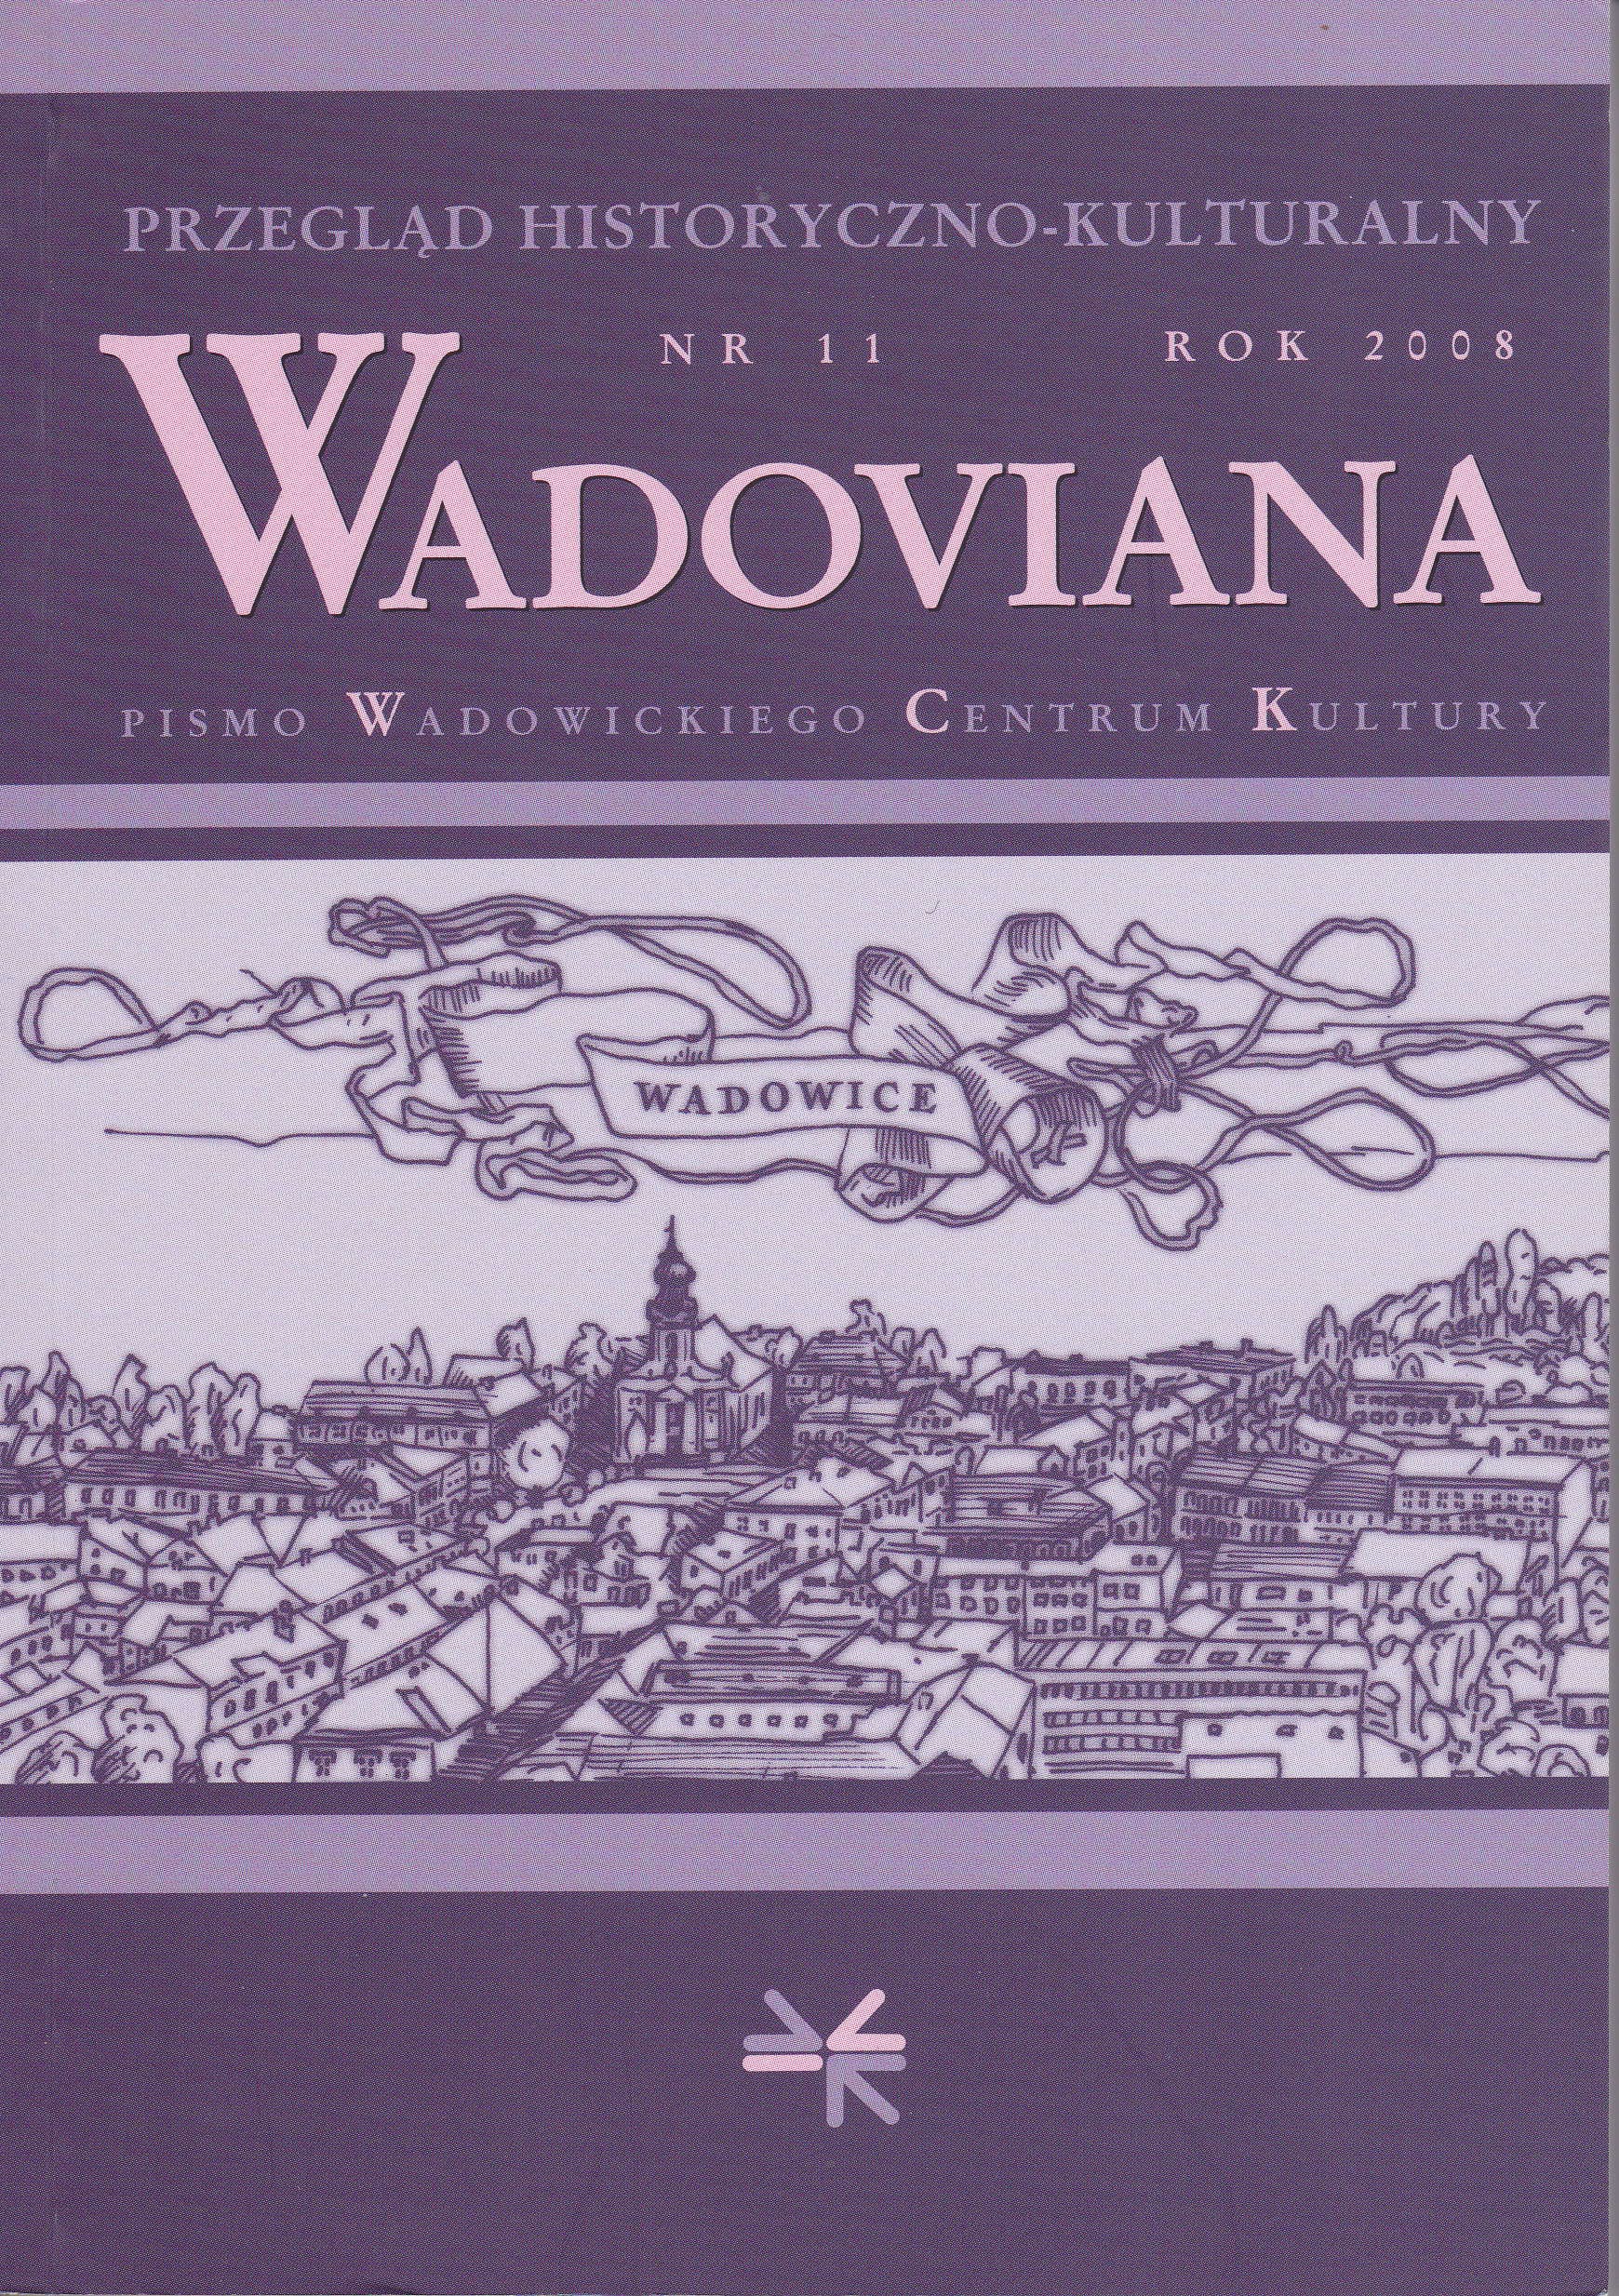 Wadowickie Towarzystwo imienia Króla Władysława Jagiełły in the archives in Lviv (1910-1912)